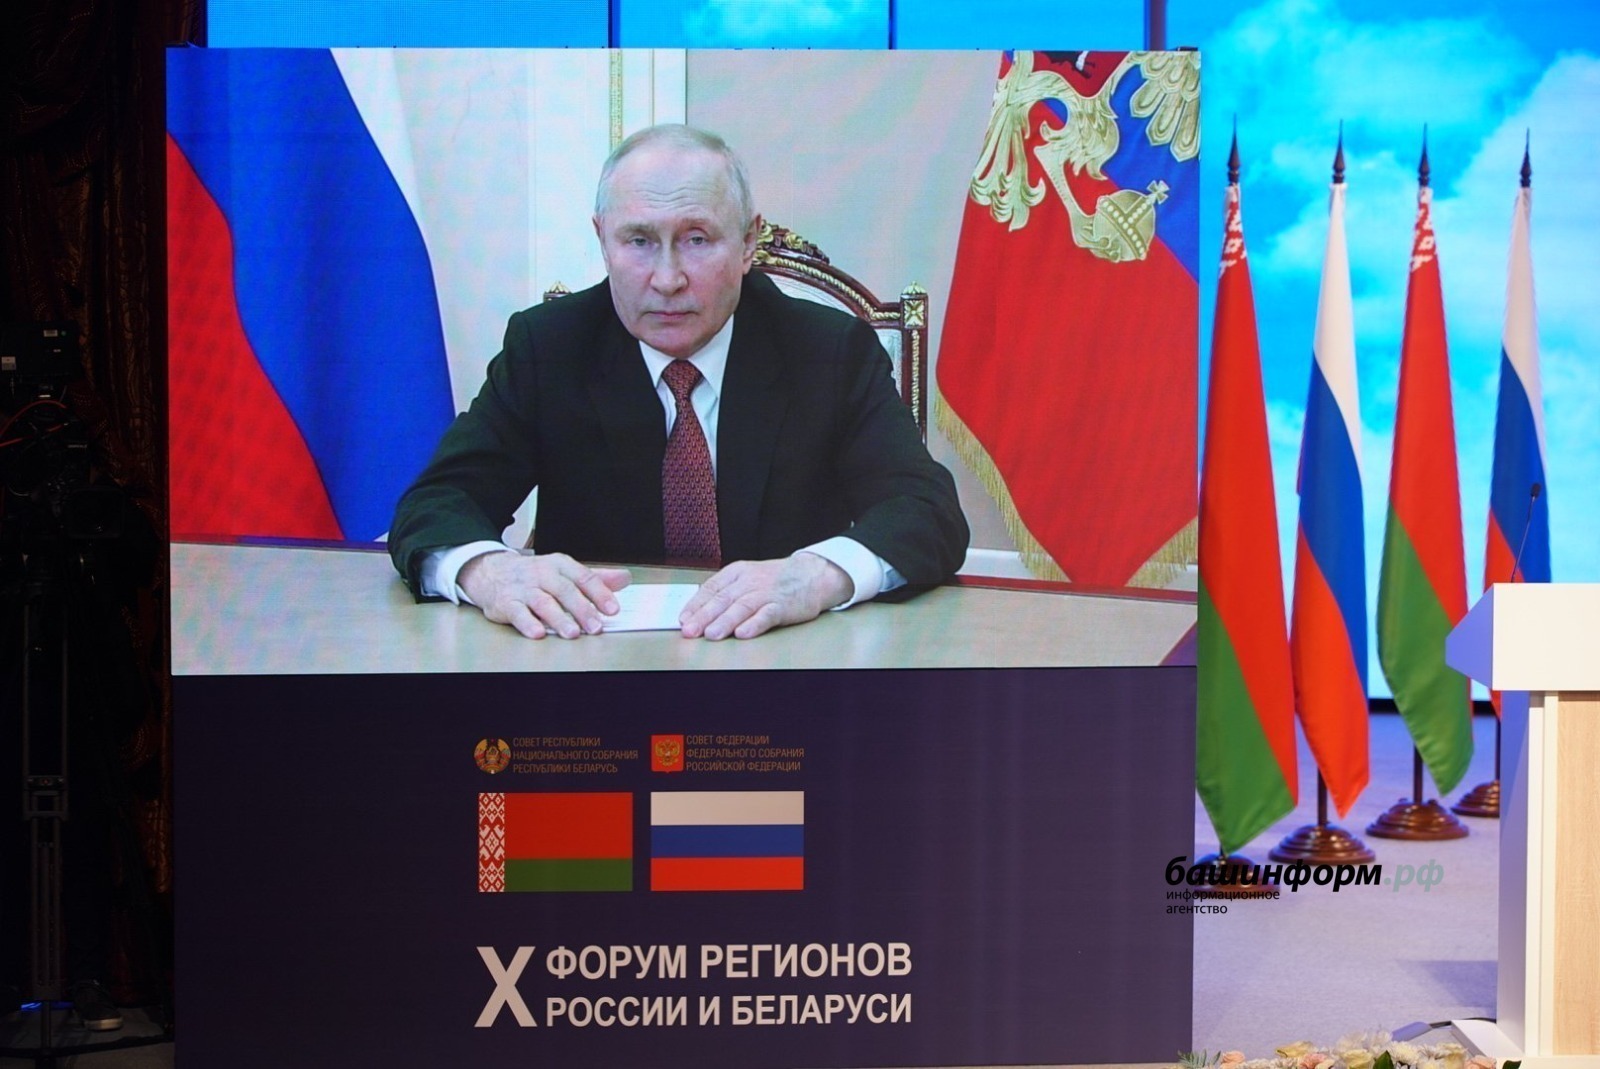 Рәсәйҙең яңы төбәктәре Белоруссия менән үҙ-ара хеҙмәттәшлекте үҫтереү яҡлы - Владимир Путин